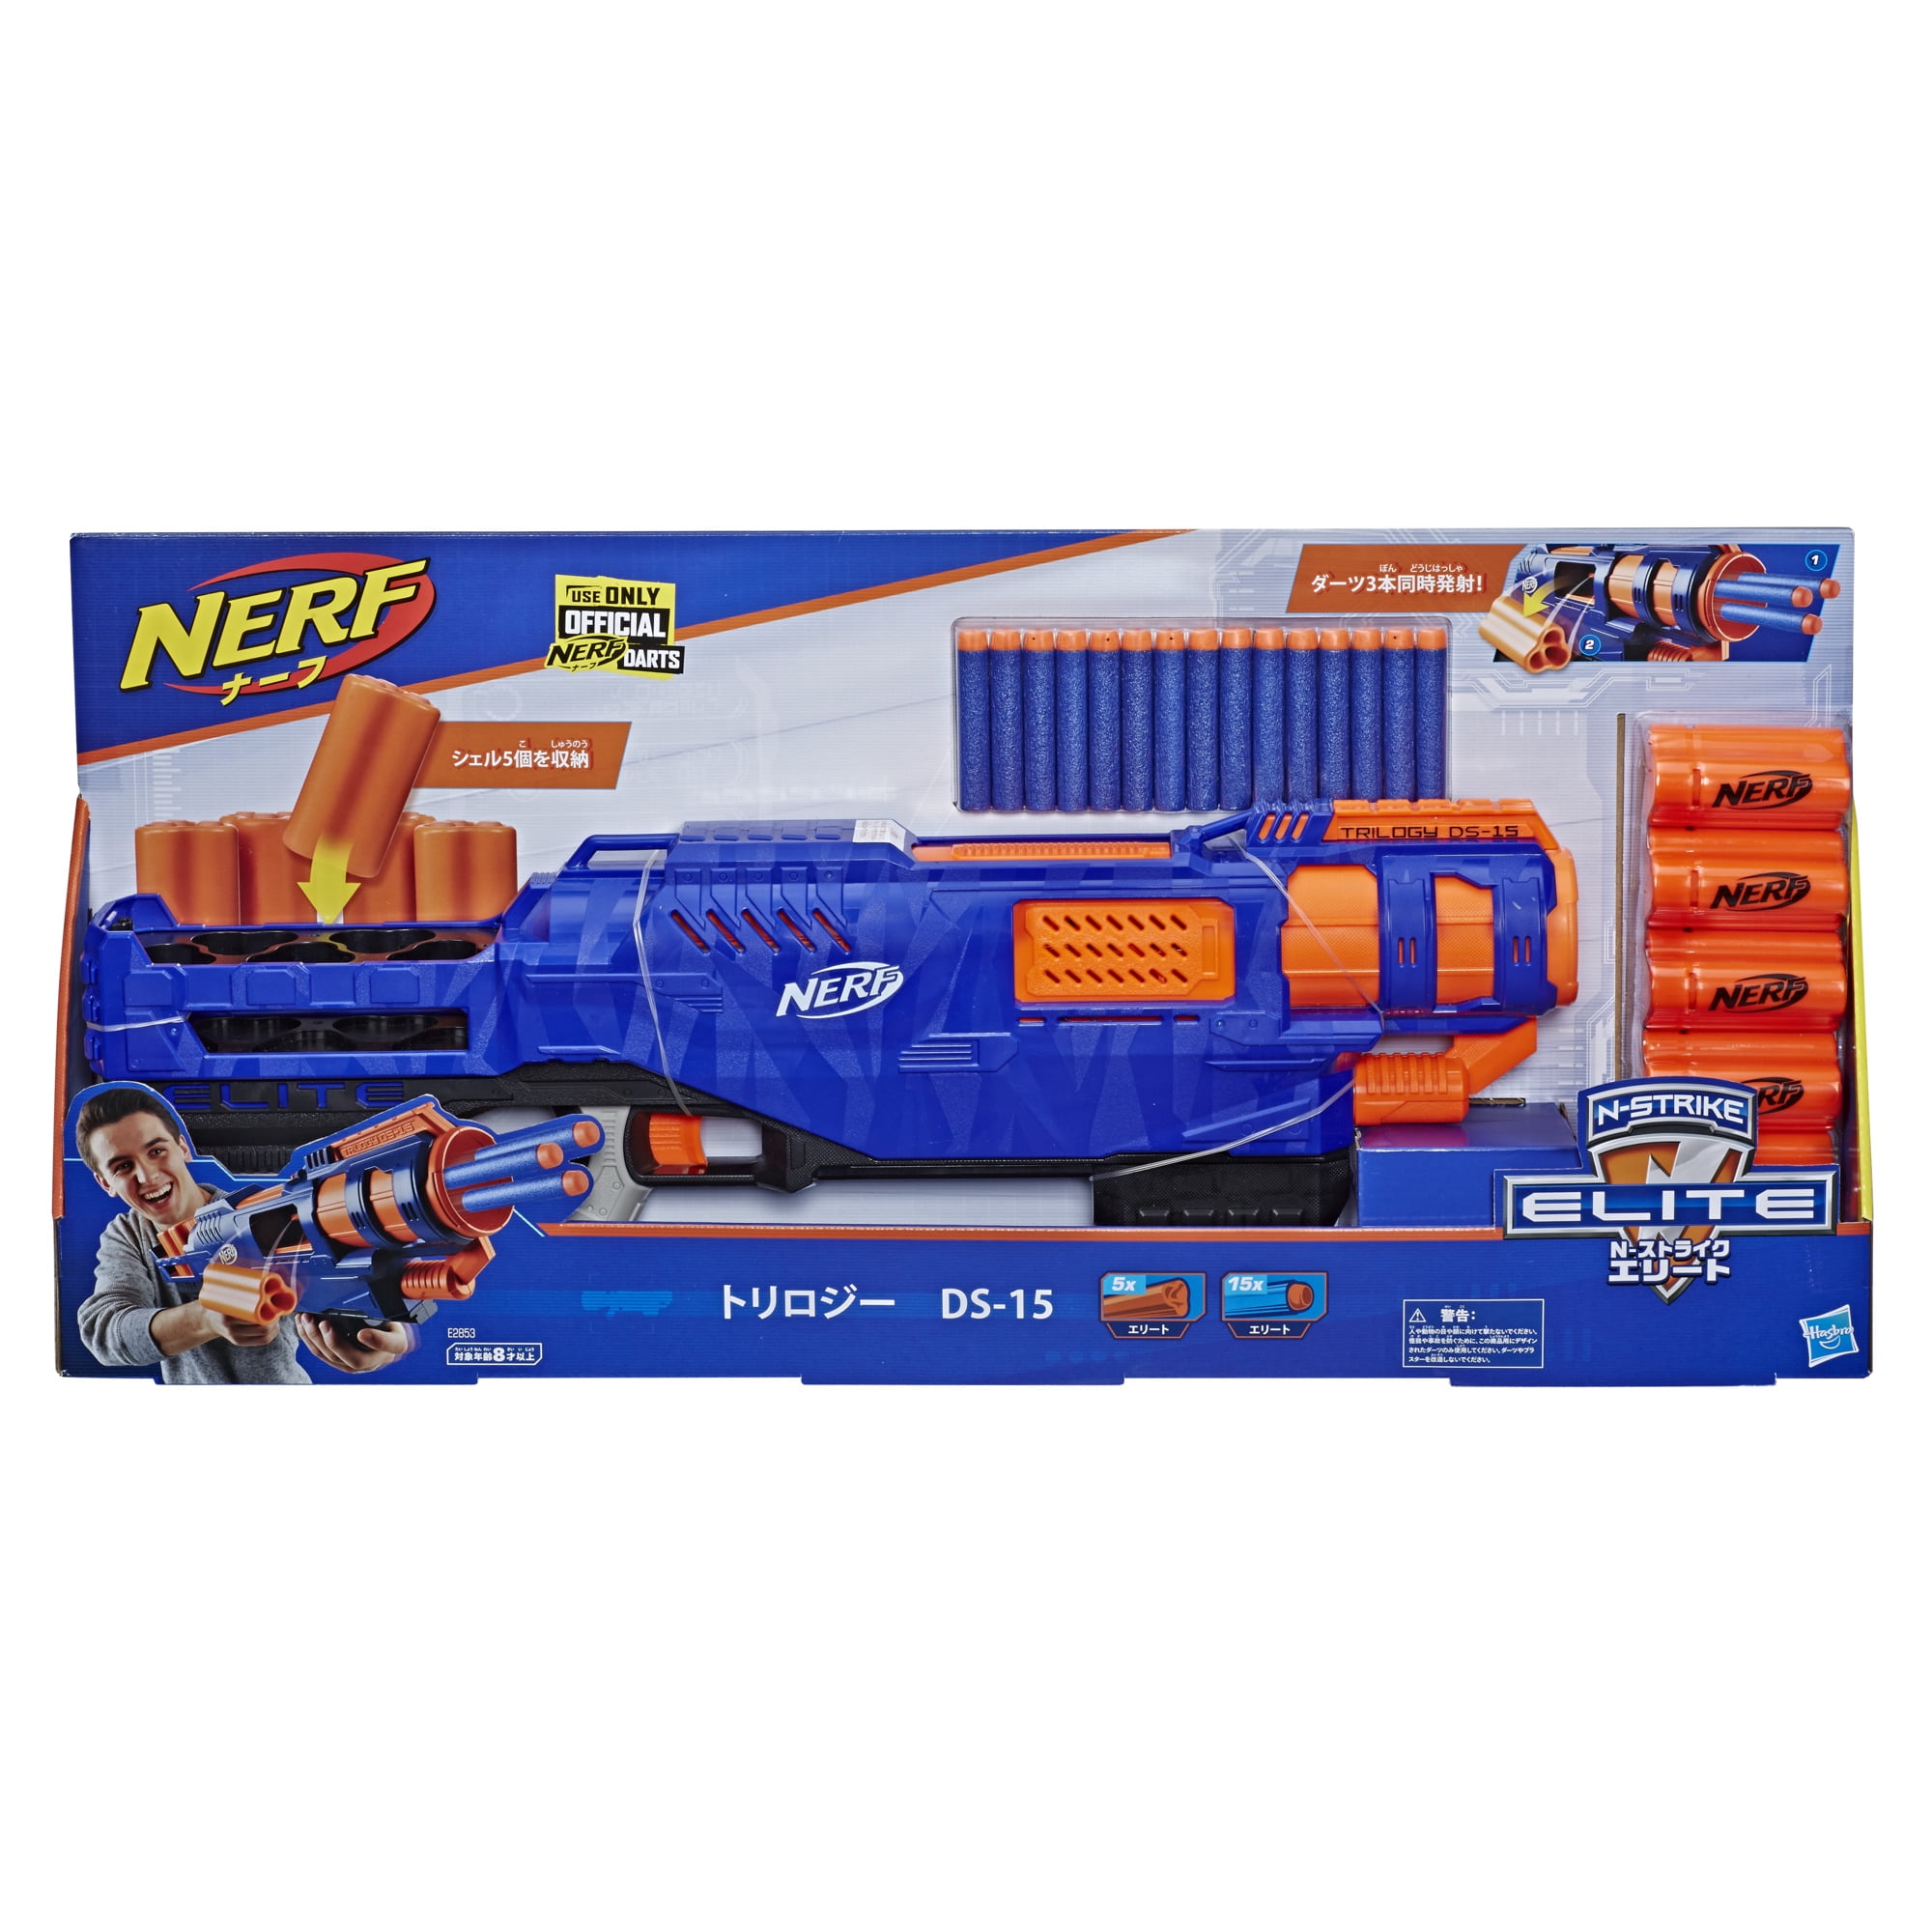 Alternativt forslag skab Finde sig i Trilogy DS-15 Nerf N-Strike Elite Toy Blaster with 15 Official Nerf Elite  Darts and 5 Shells – For Kids, Teens, Adults - Walmart.com